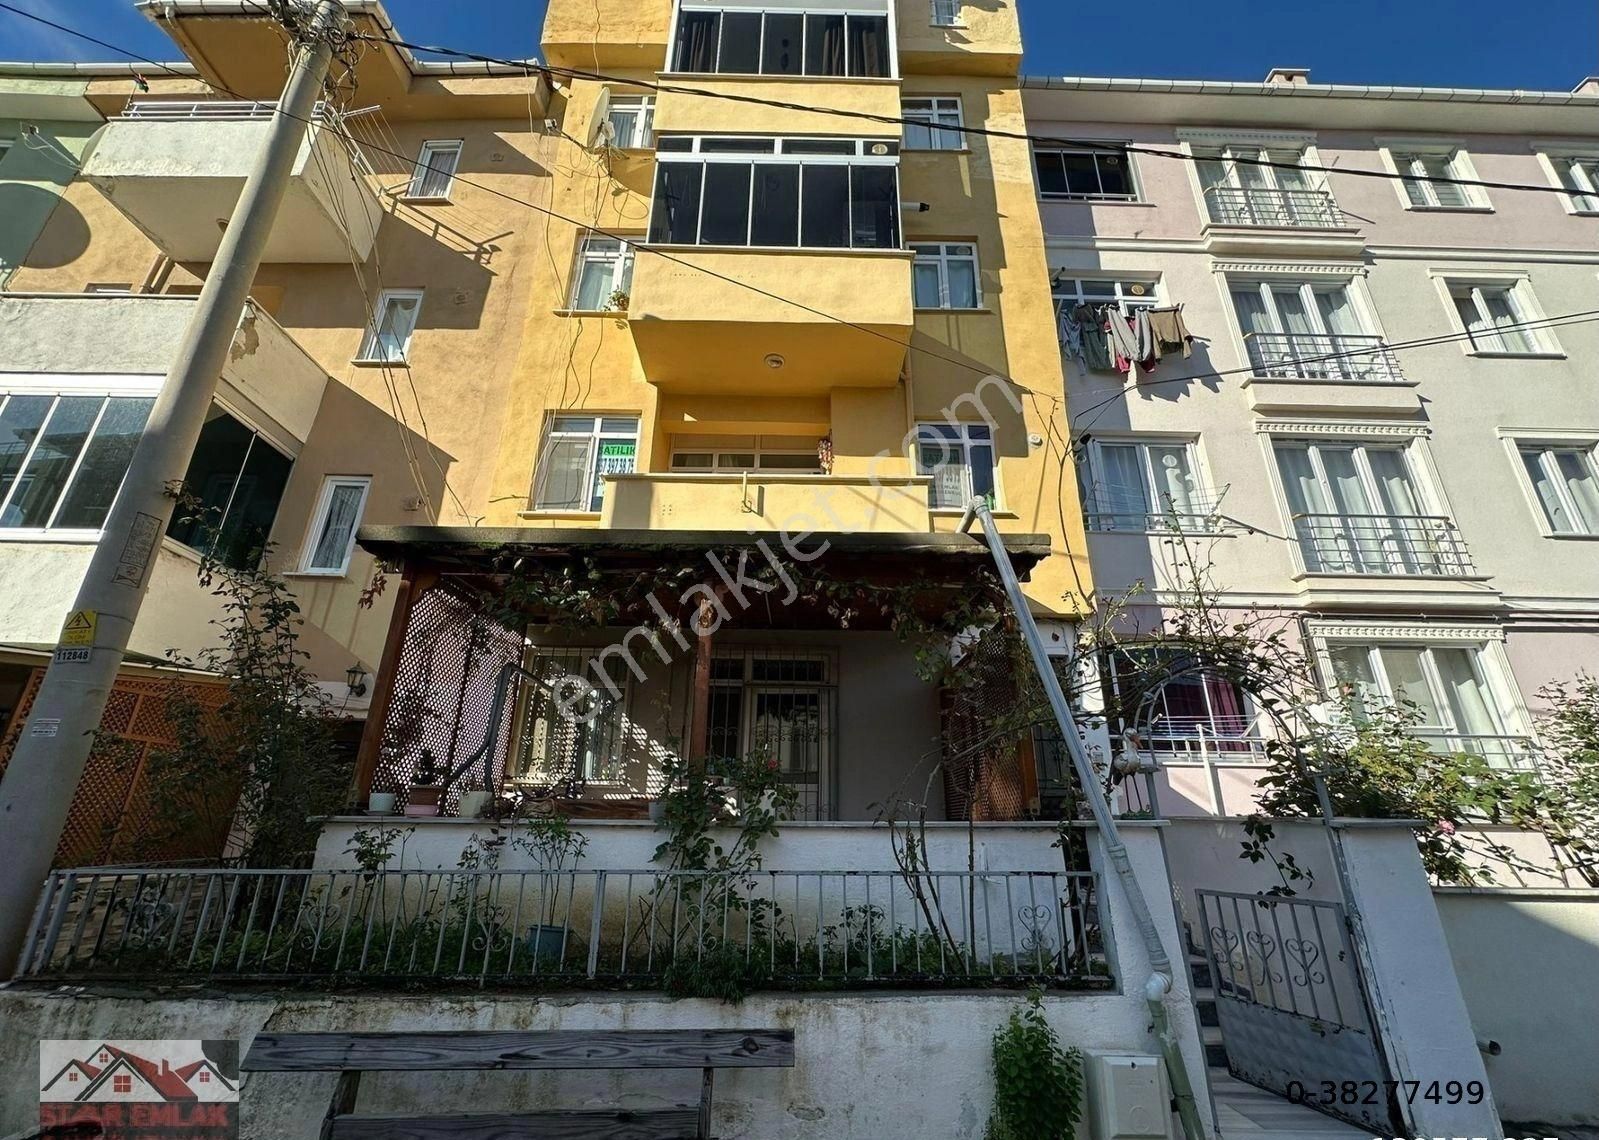 Süleymanpaşa Kumbağ Satılık Daire Kumbağ'da denize 150 metre çift balkonlu 2+1 satılık daire